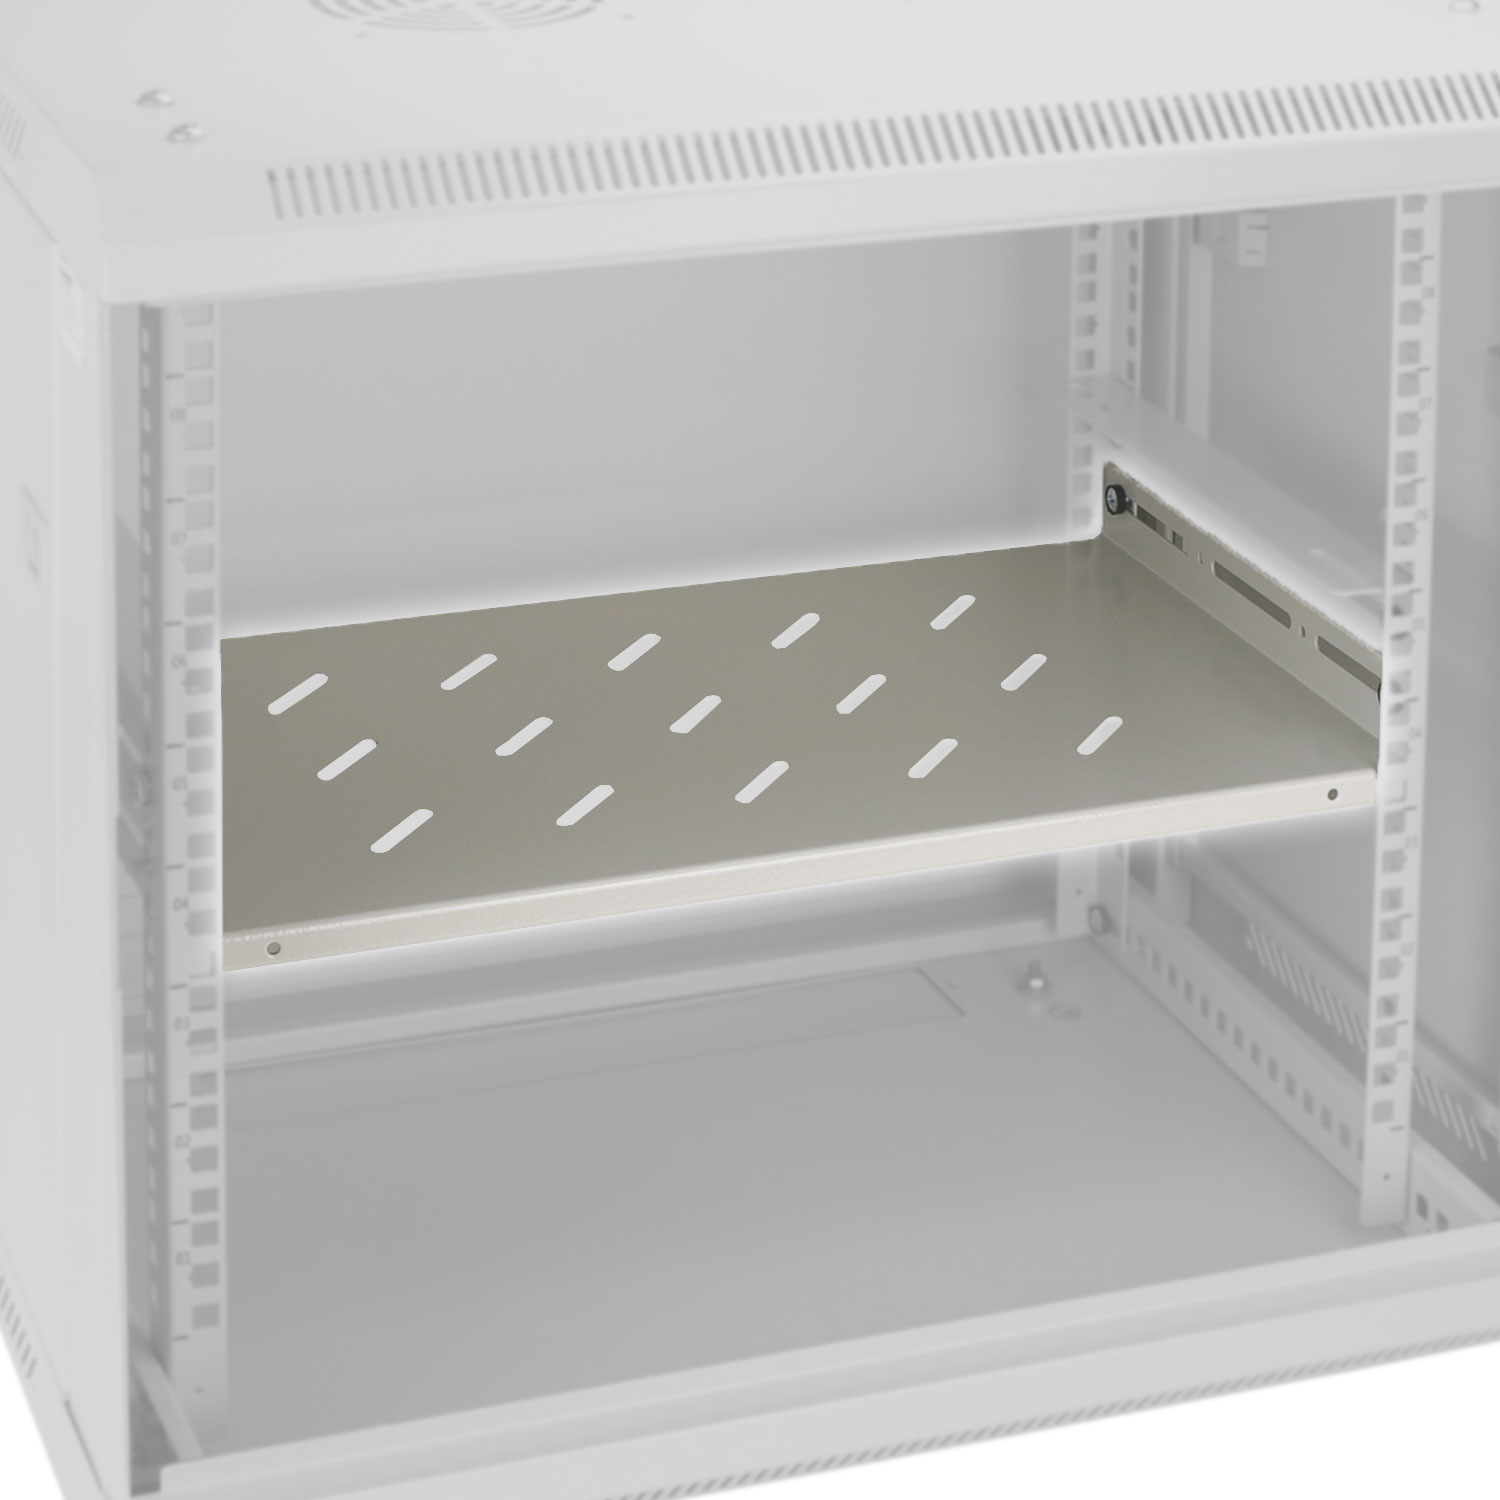 Fachboden für 19 Zoll Serverschränke mit 1 Höheneinheit von HMF mit 27 cm Breite in Lichtgrau